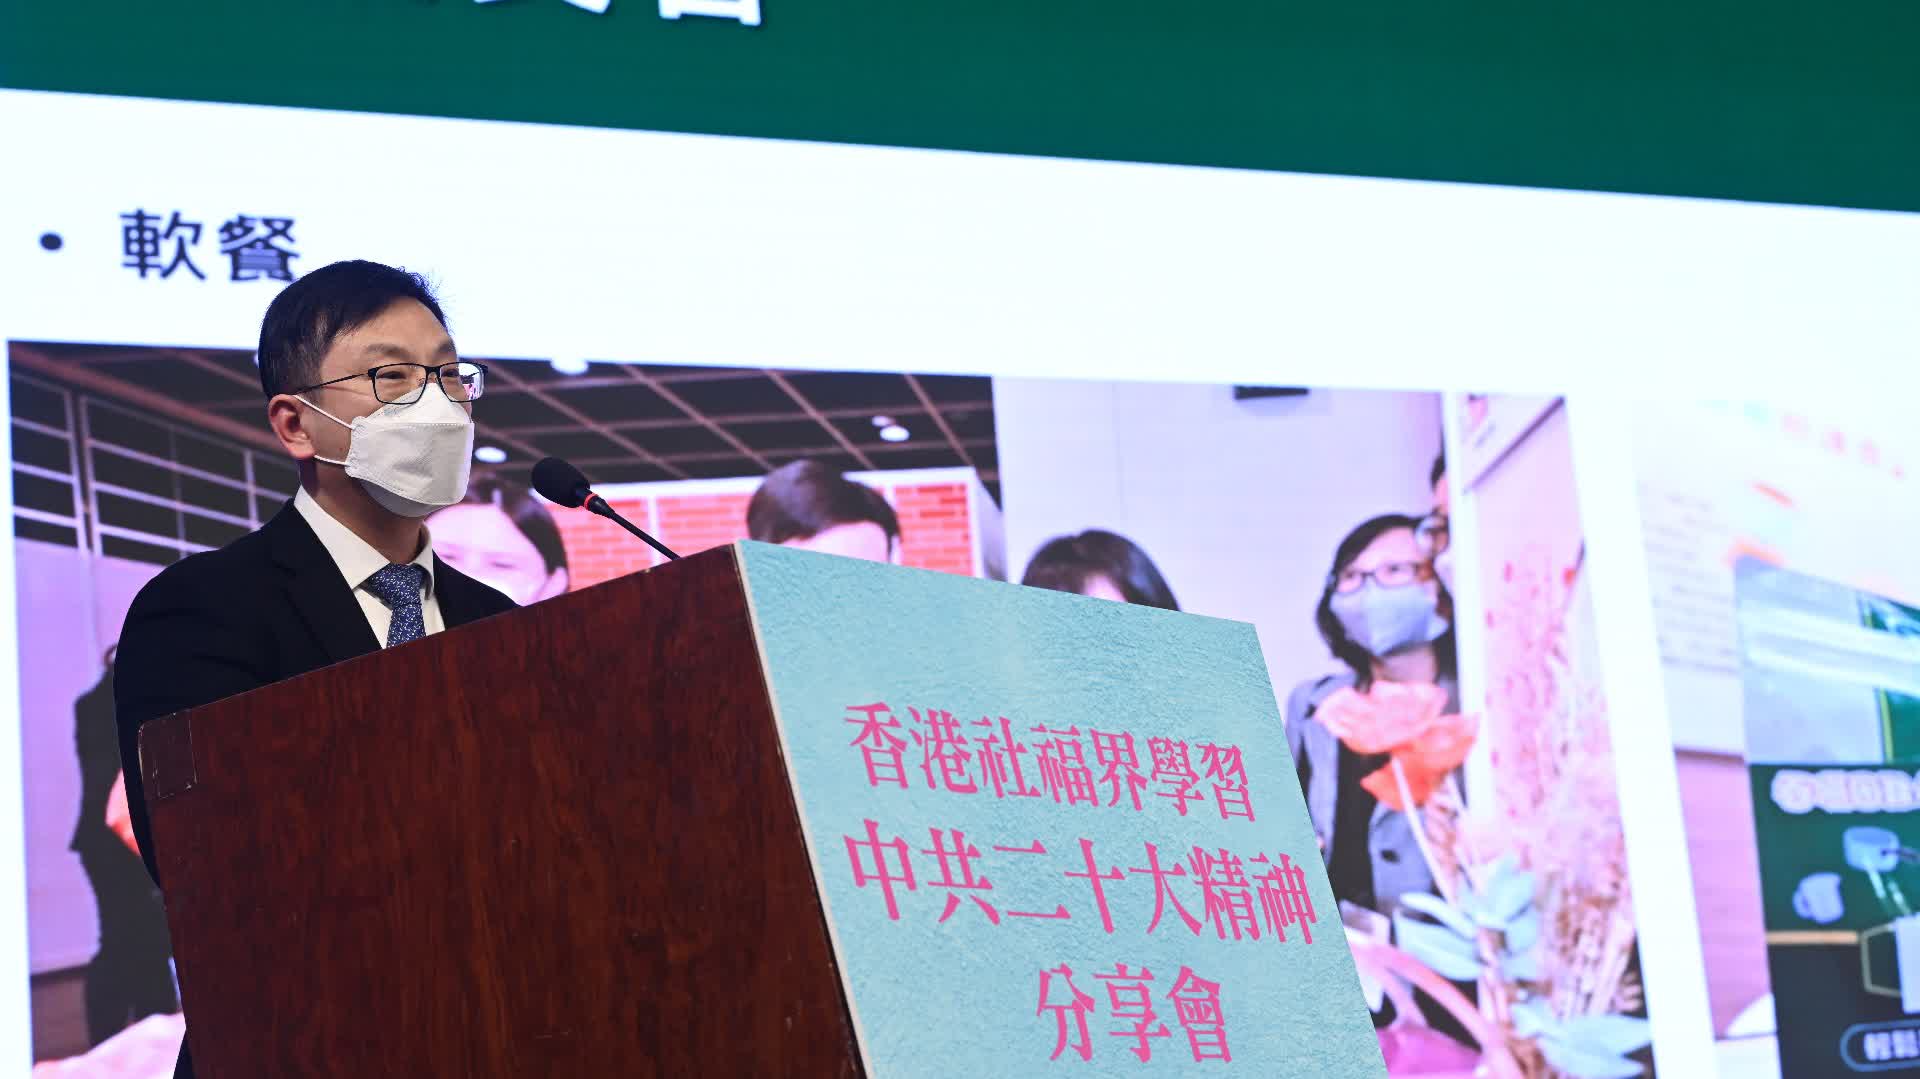 孫玉菡冀香港社福政策經驗可為國家貢獻力量　以維護人民根本利益